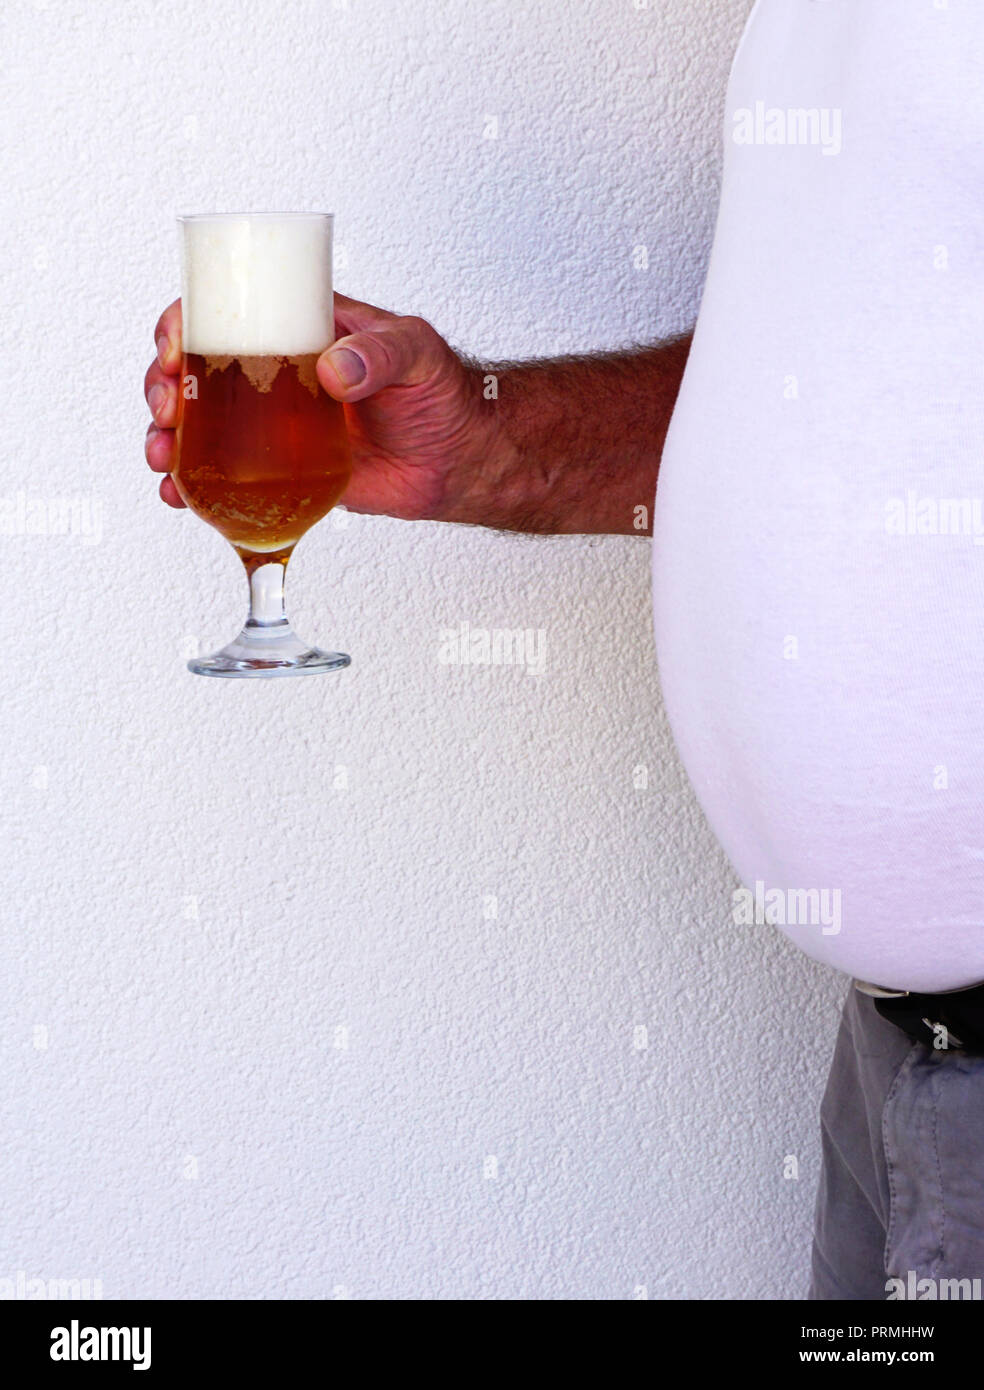 Großes Bier Bauch Mann hält ein Glas voll Bier, Blasen und Bier Schaum auf weißem Hintergrund Stockfoto